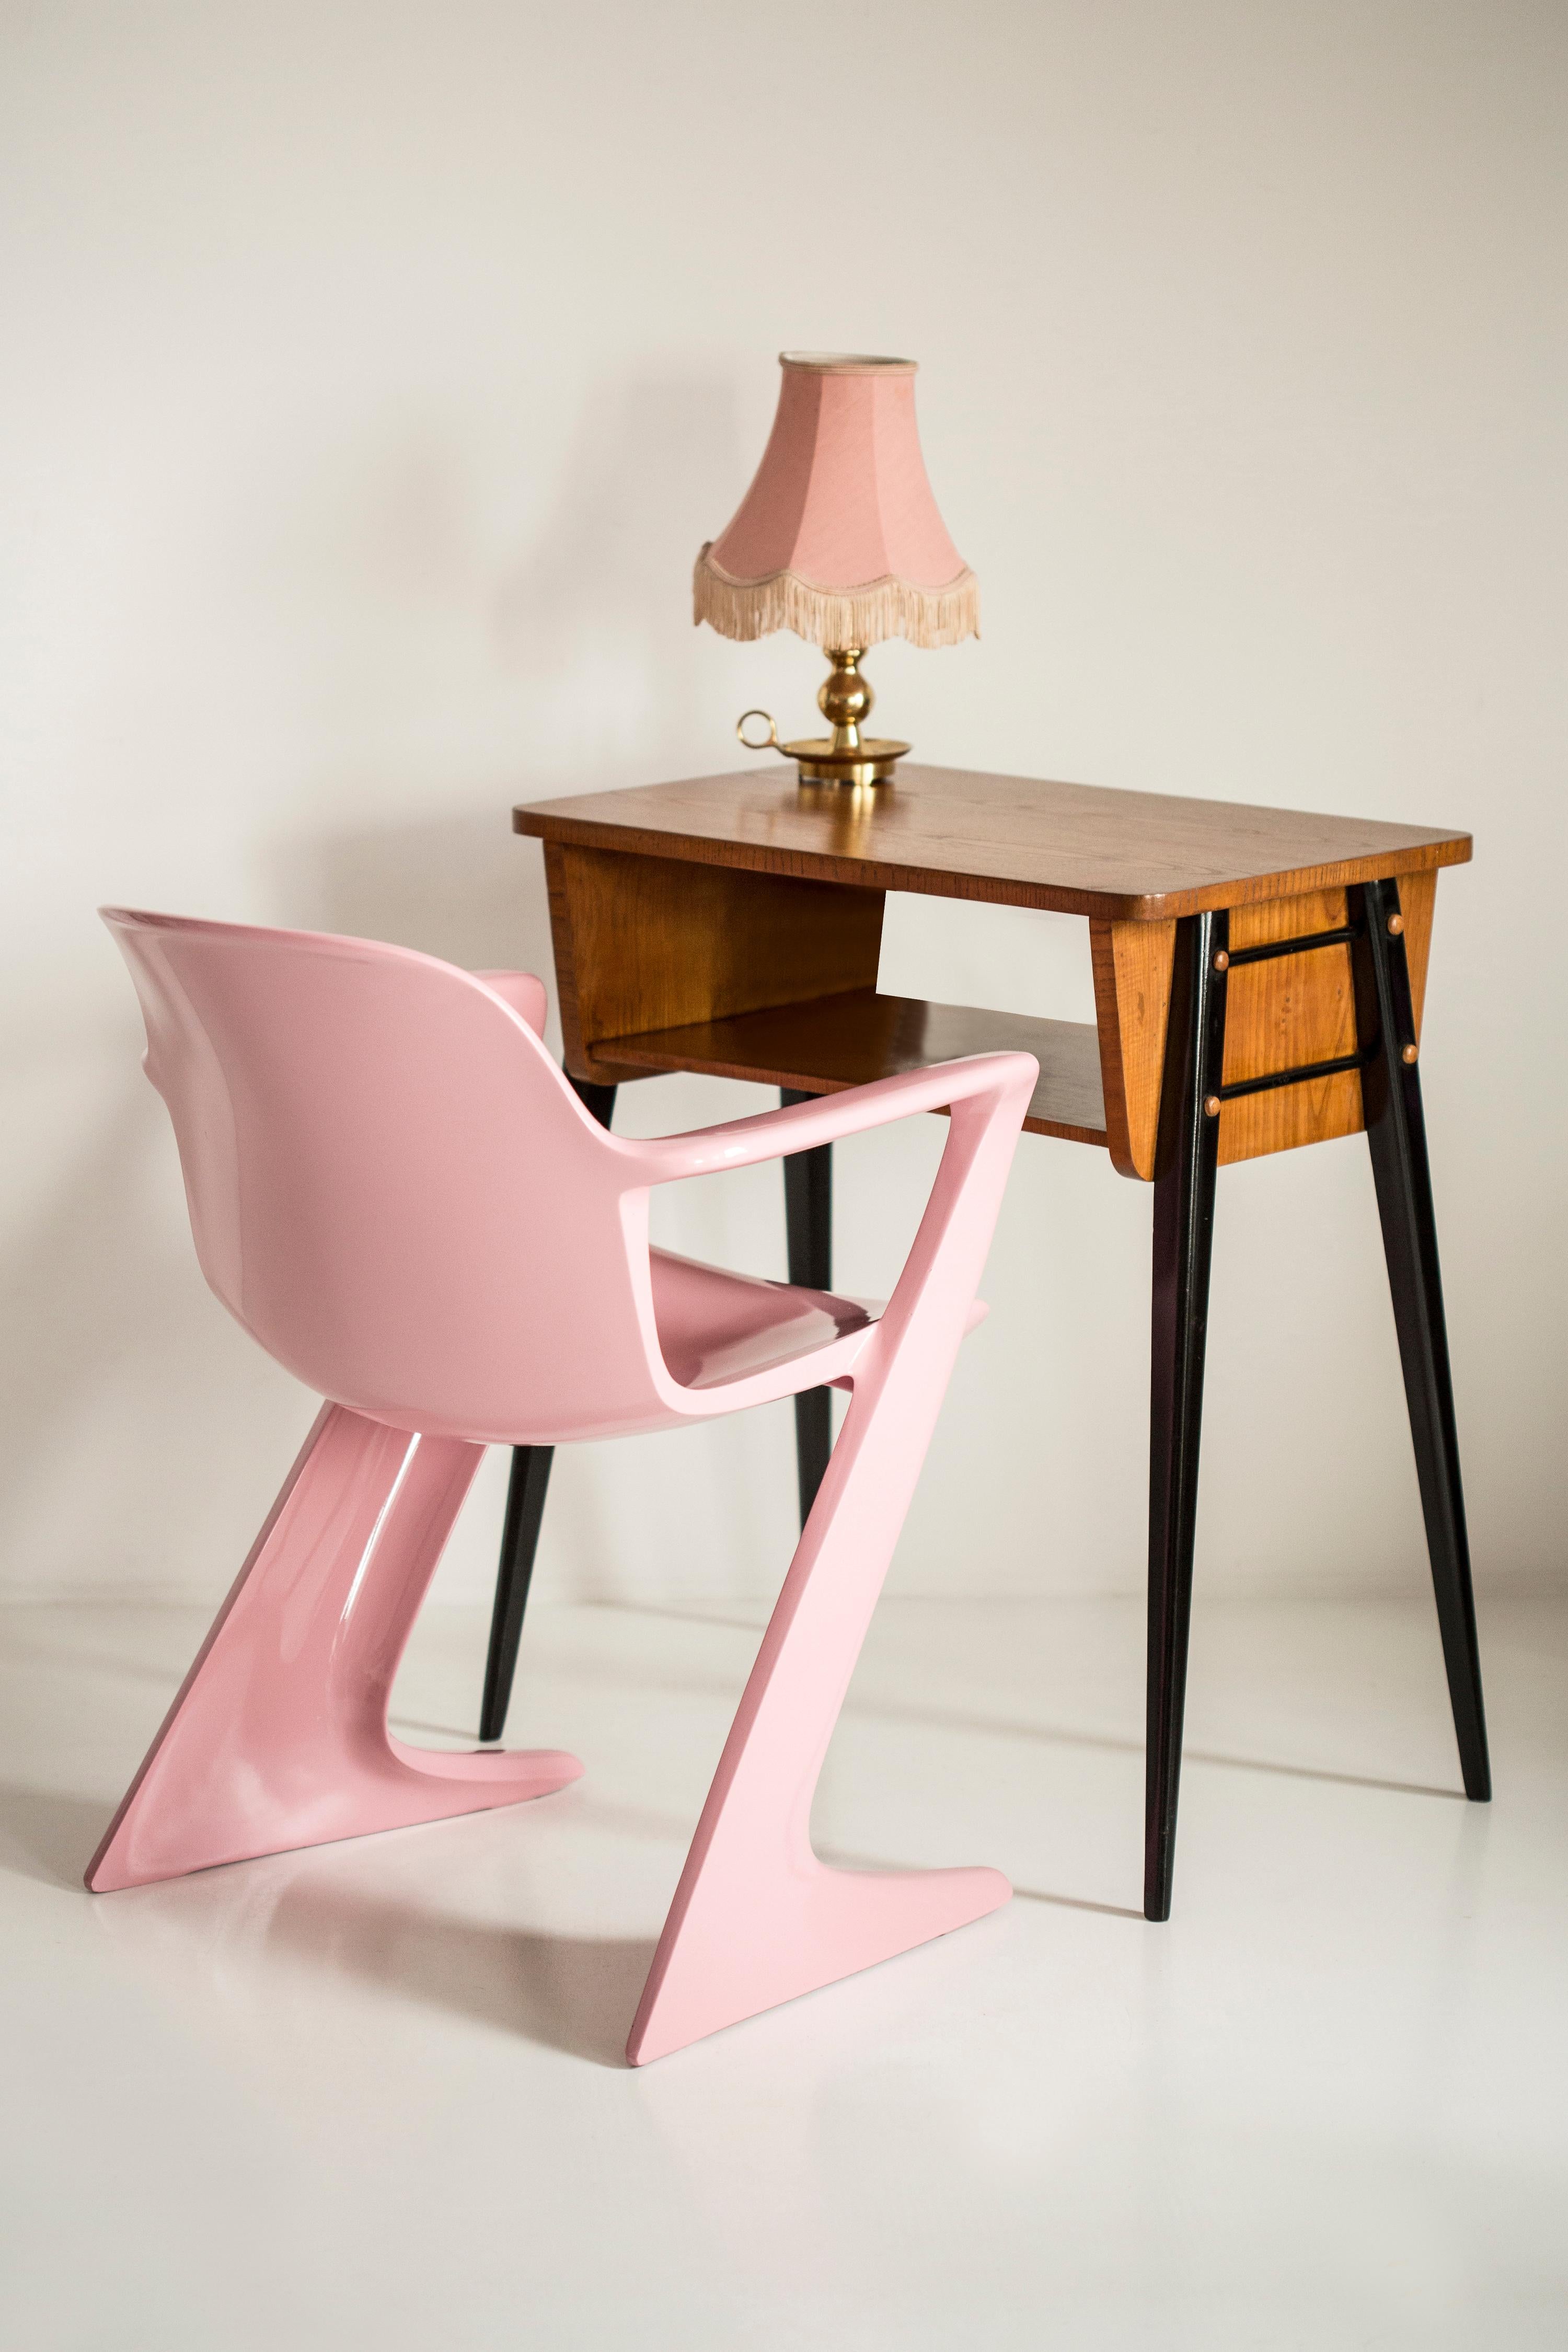 Ce modèle est appelé Z-chair. Conçue en 1968 en RDA par Ernst Moeckl et Siegfried Mehl, version allemande de la chaise Panton. Également appelée chaise kangourou ou chaise variopur. Produit en Allemagne de l'Est.

La z.stuhl, conçue par Ernst Moeckl